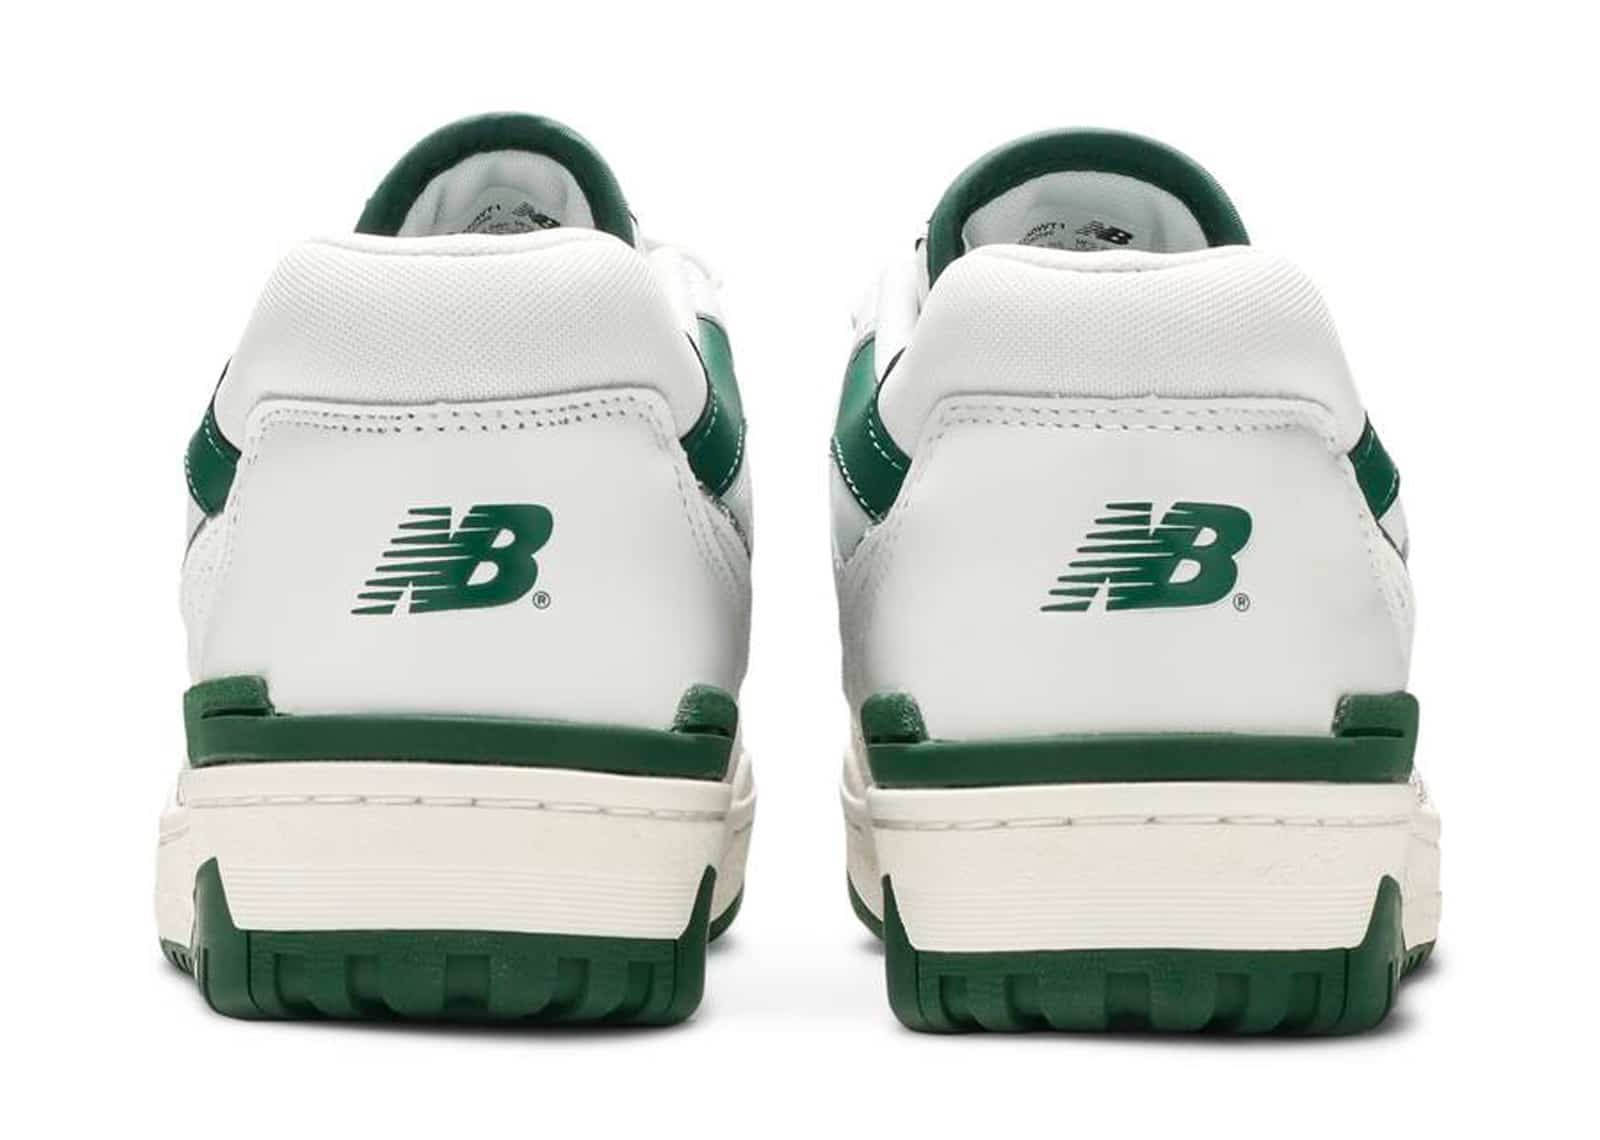 Zapatillas de deporte blancas con suela de goma 550 de New Balance